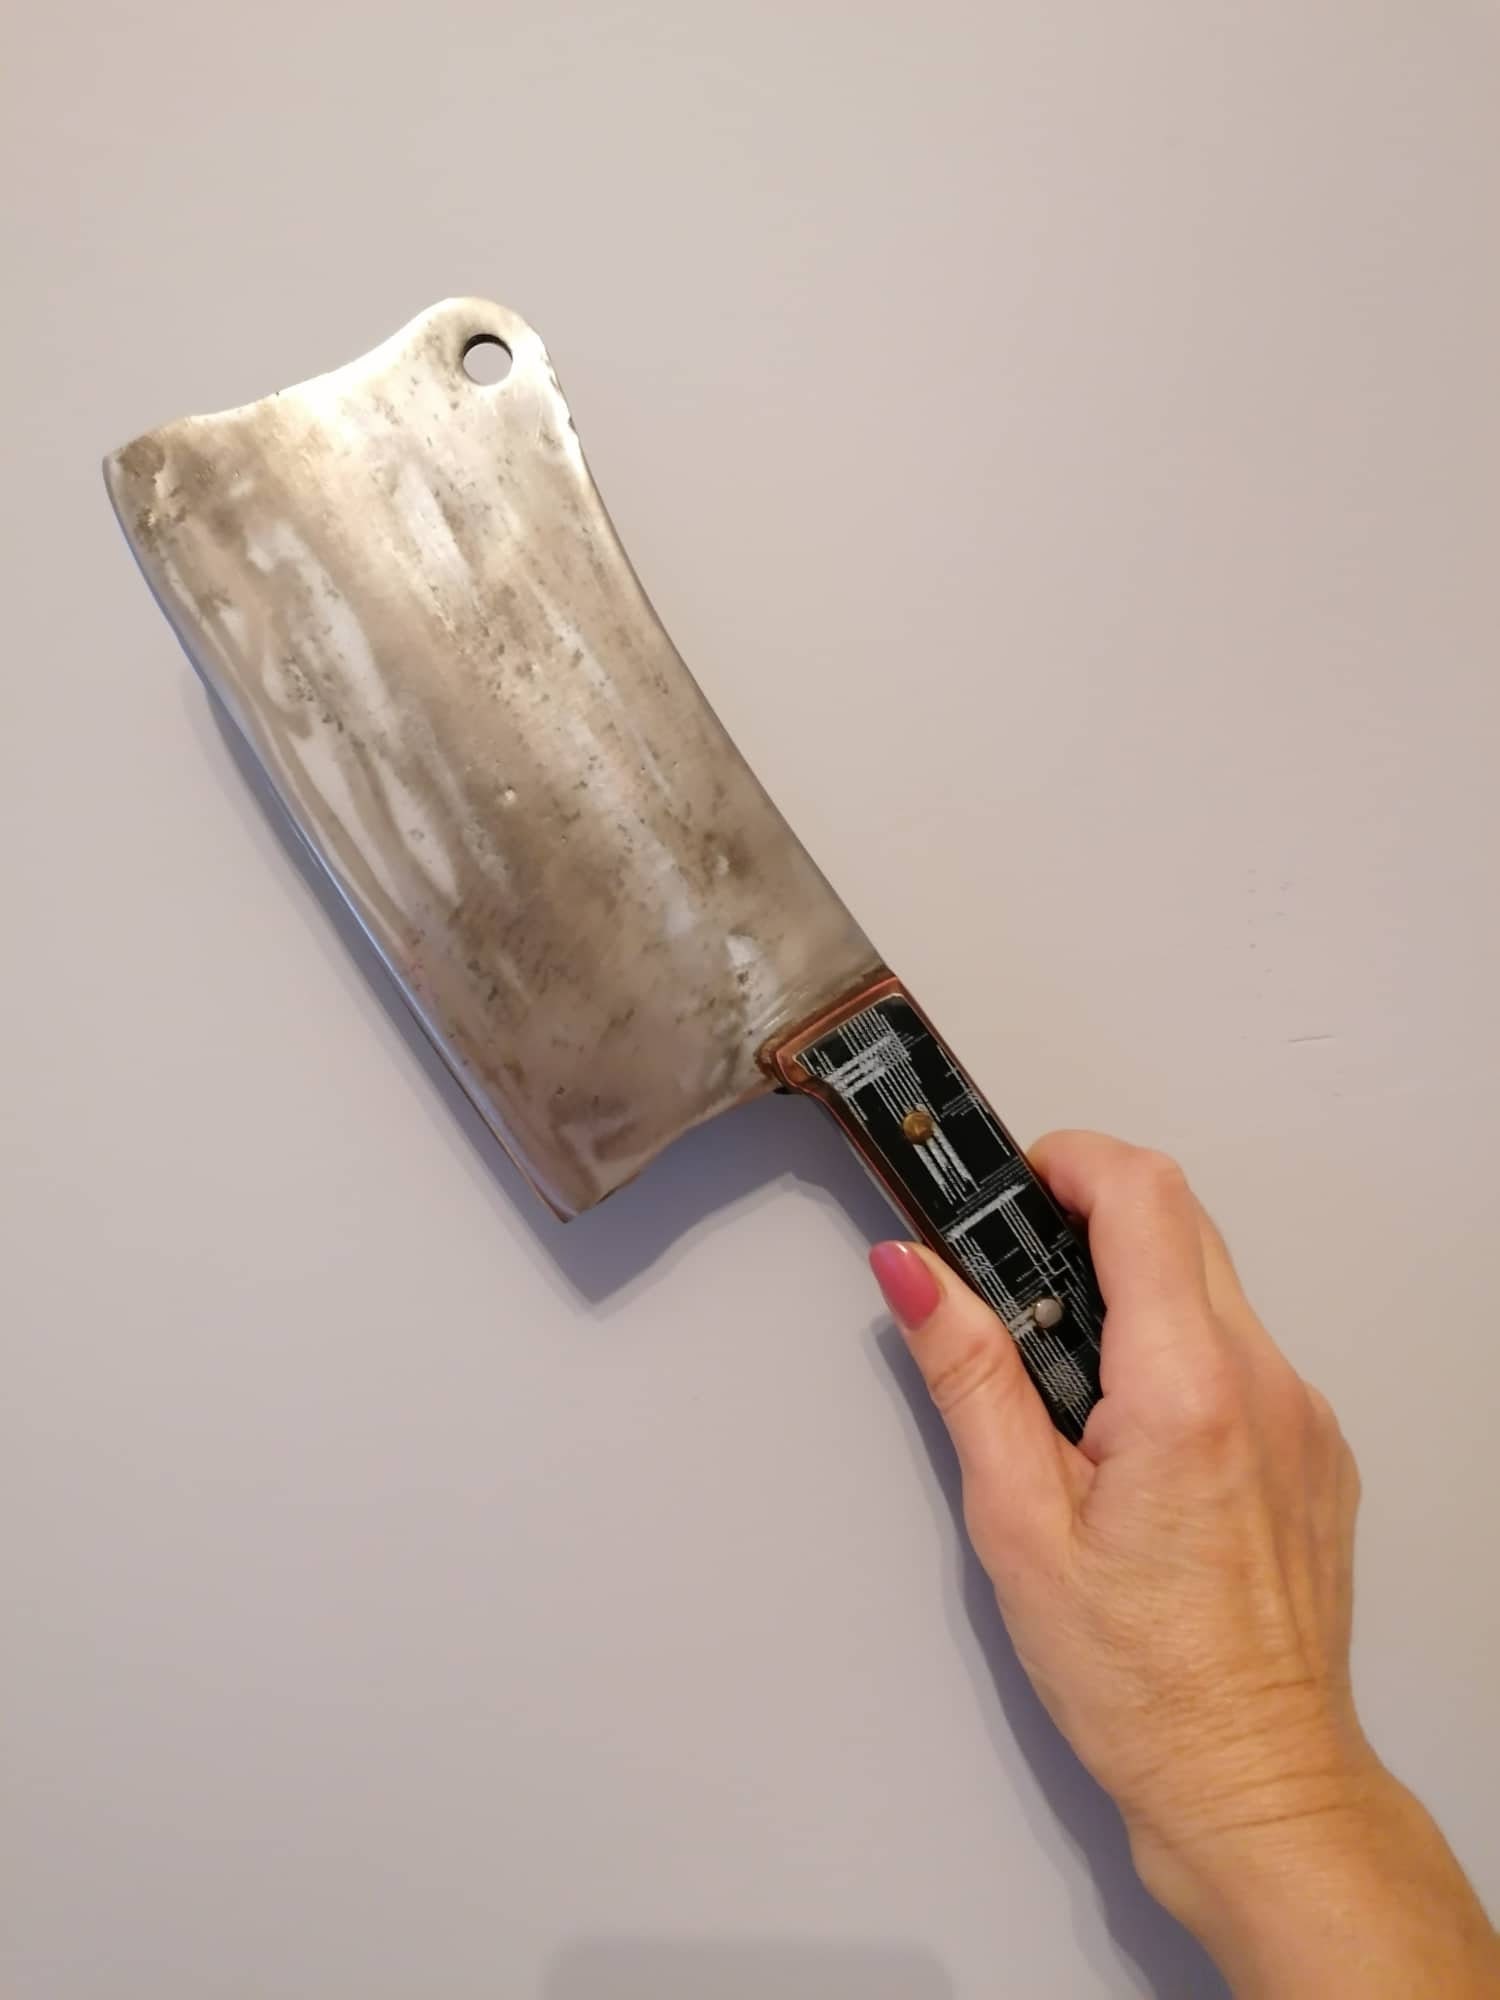 Chou Déchiré Avec Un Couteau à éplucher Sur Un Hachoir De Plastique Blanc  Image stock - Image du épluchage, frais: 181268587